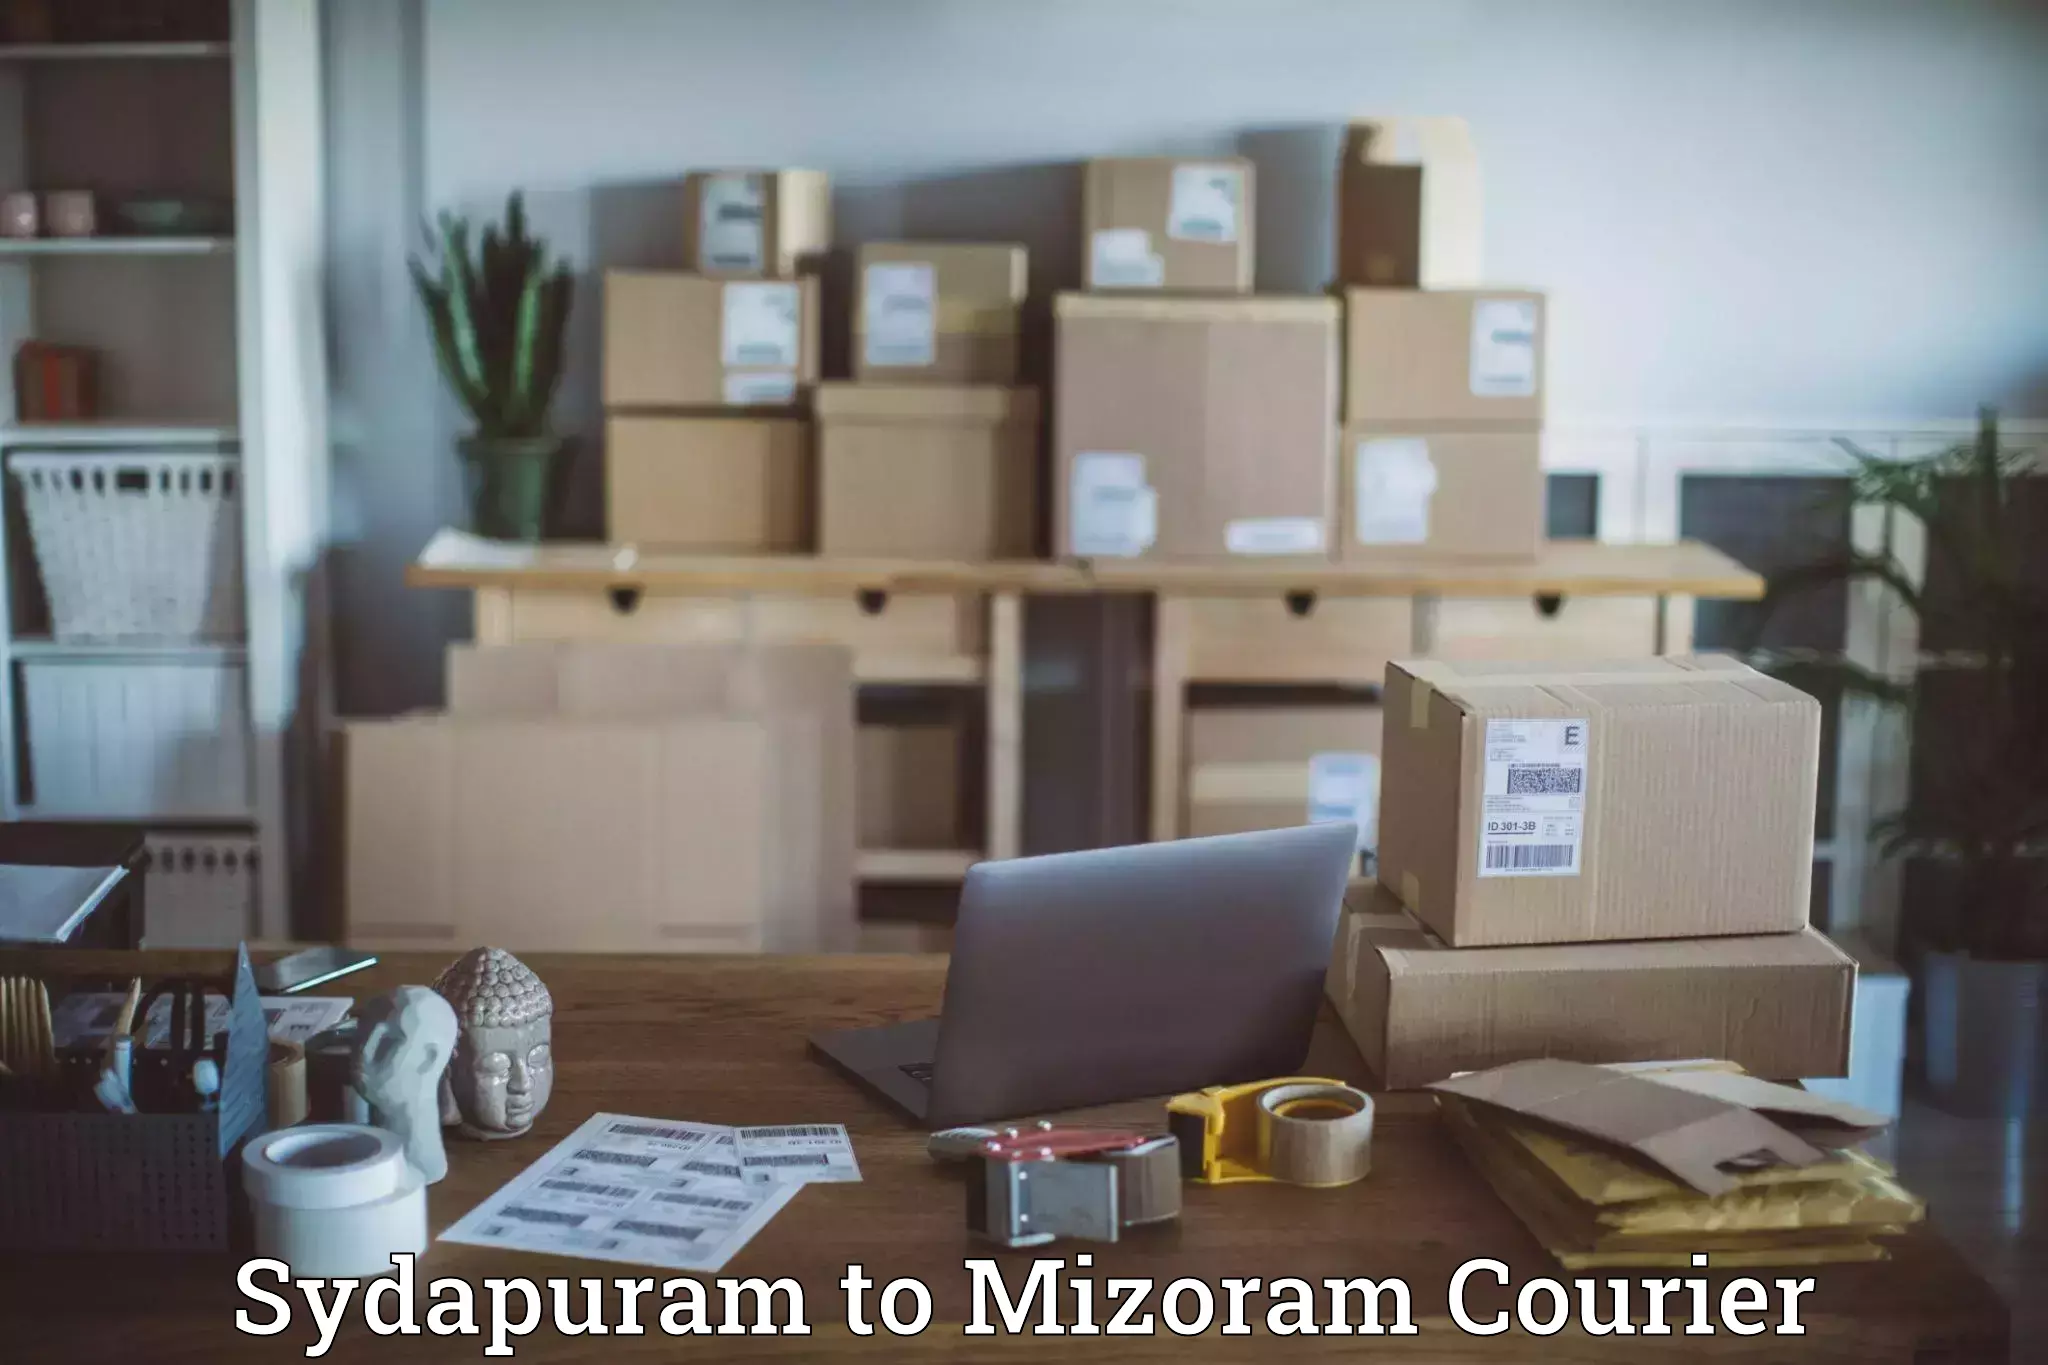 Modern parcel services Sydapuram to Darlawn